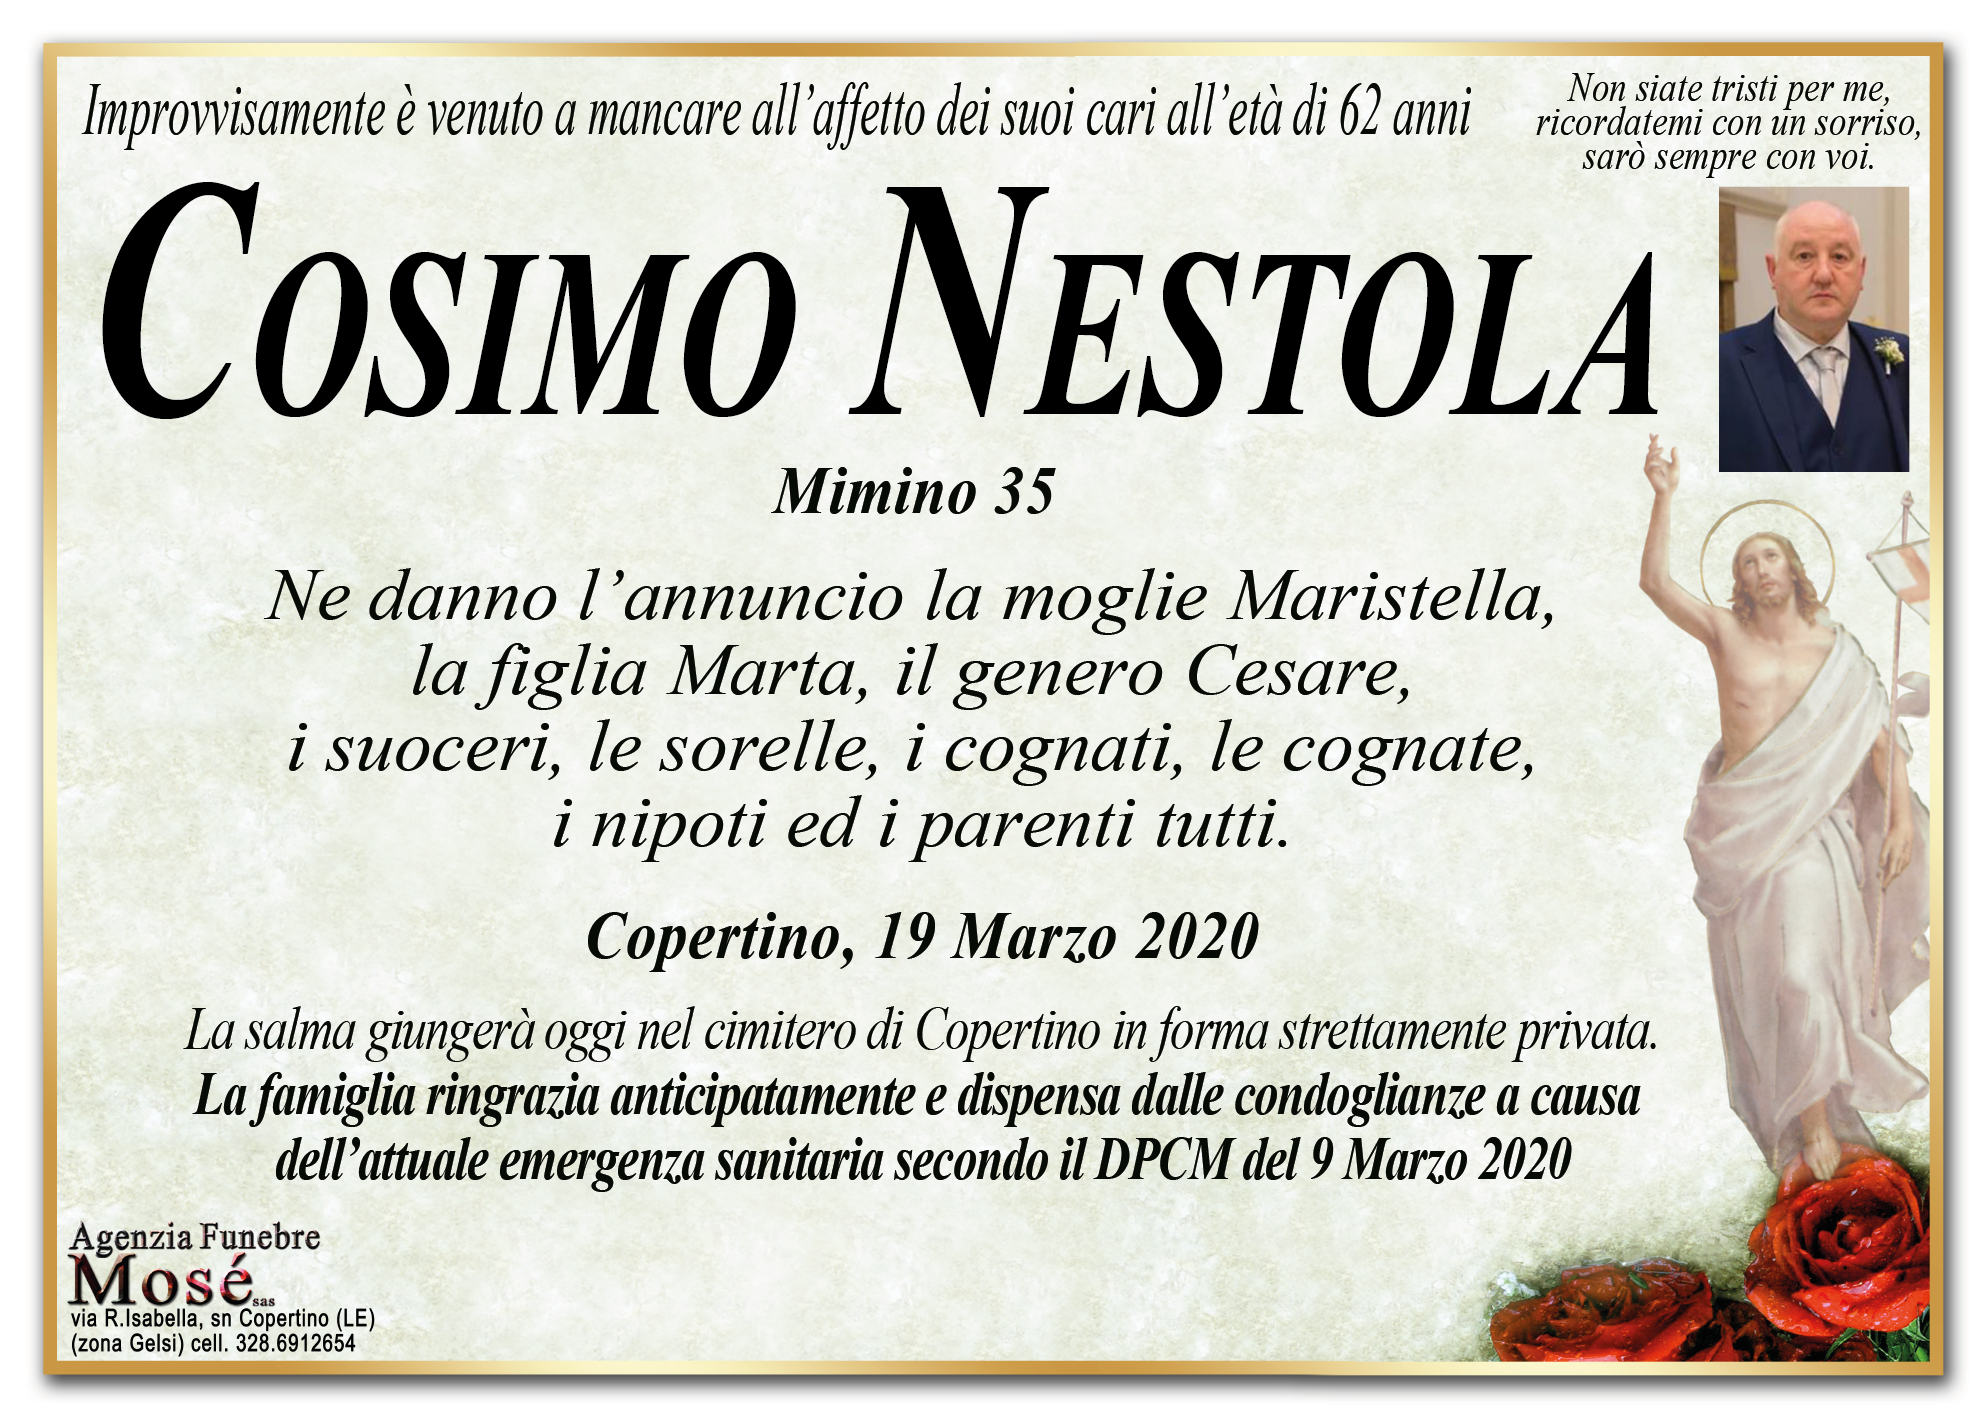 Cosimo Nestola